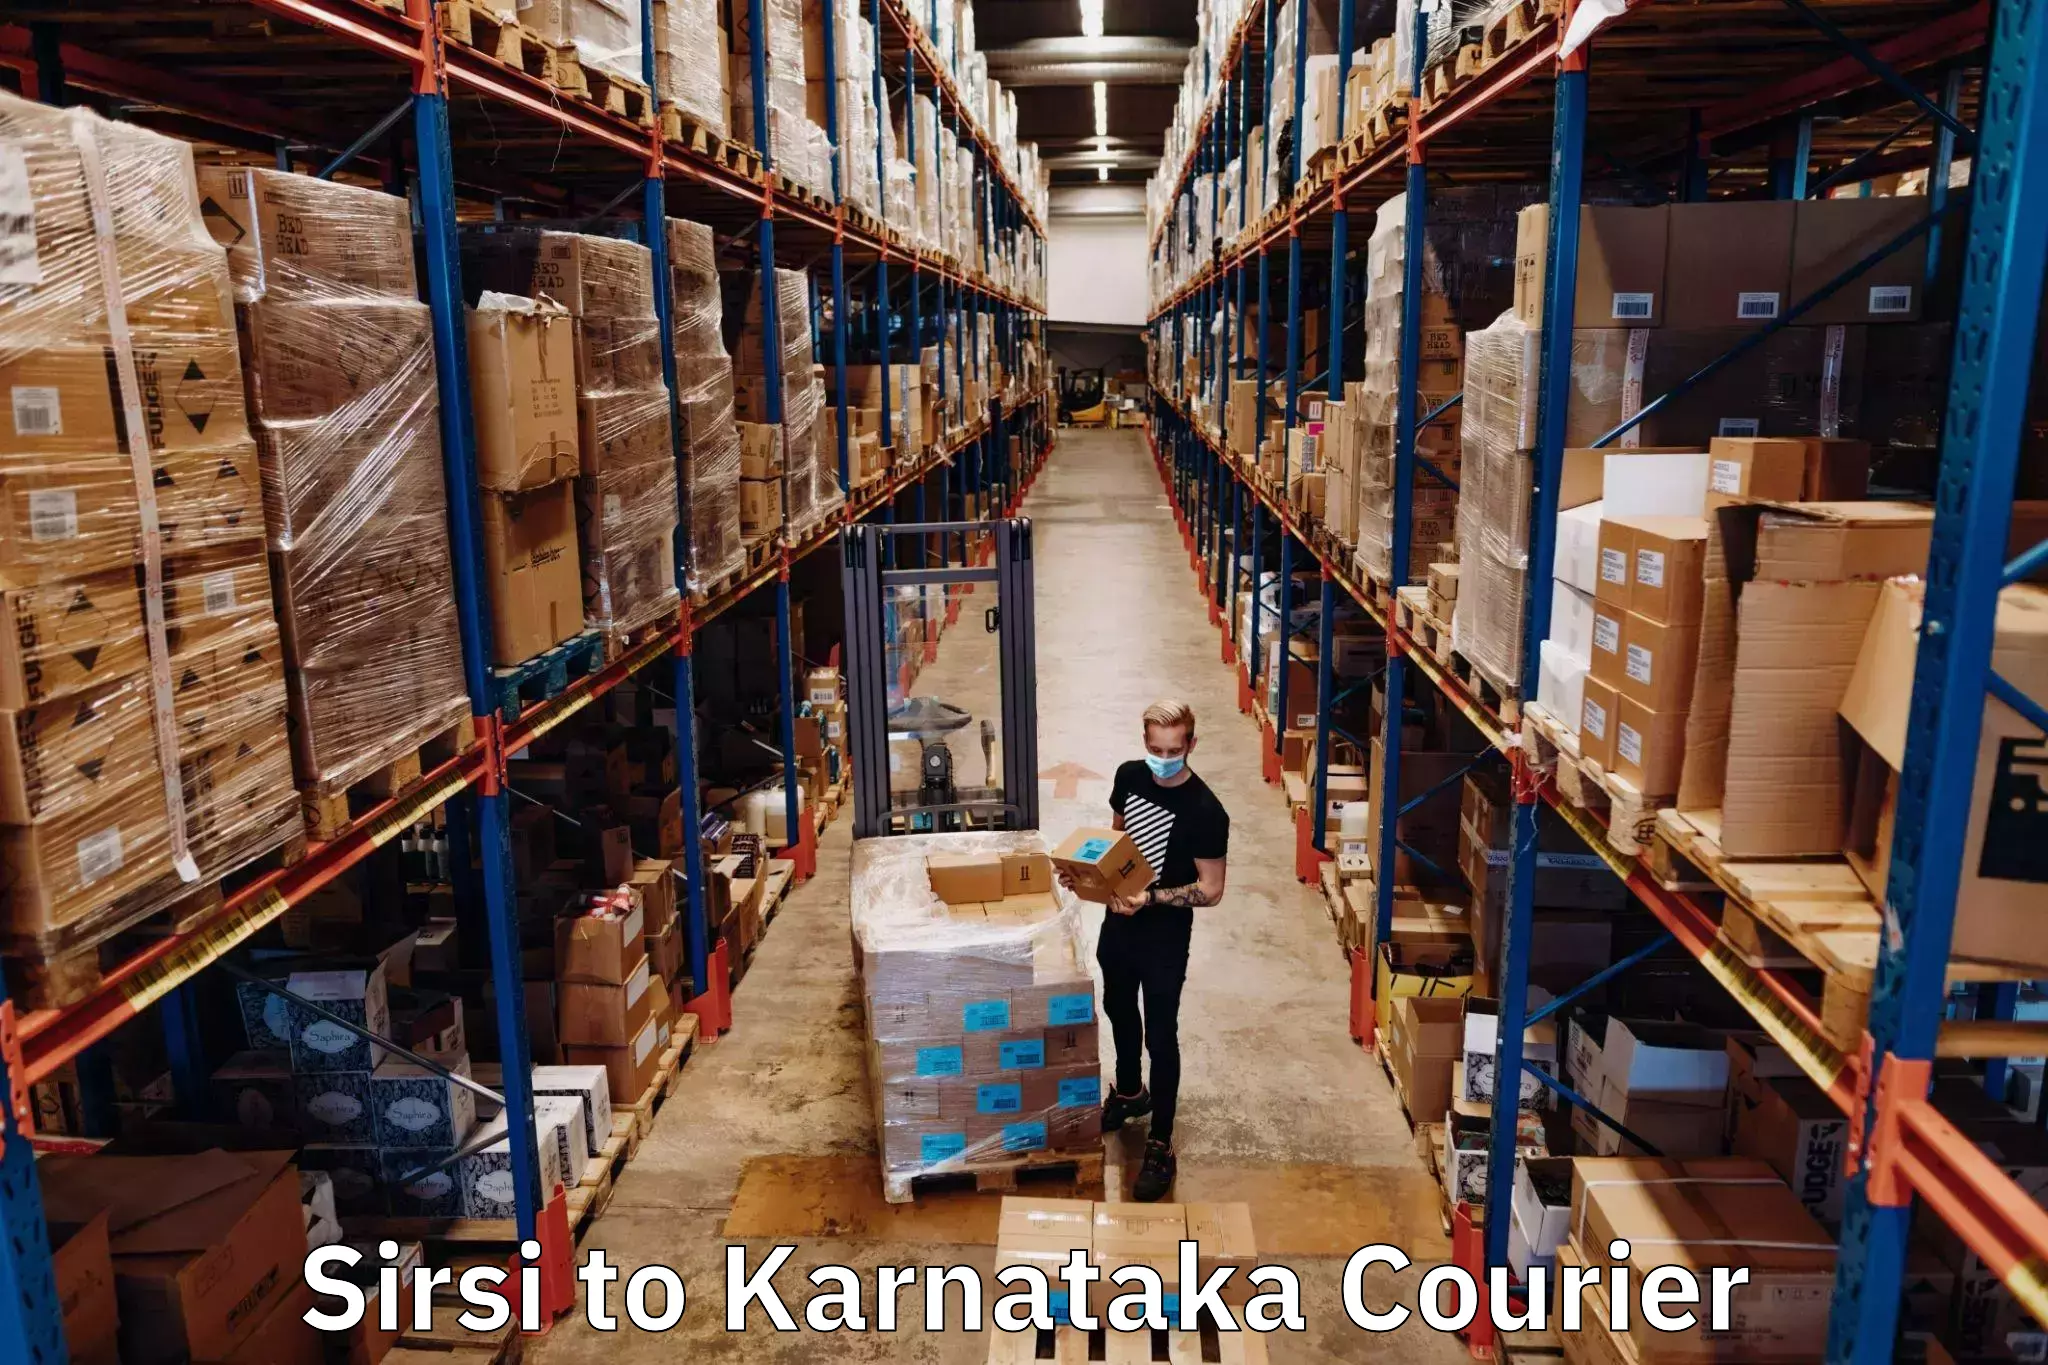 Comprehensive shipping network Sirsi to Kanjarakatte